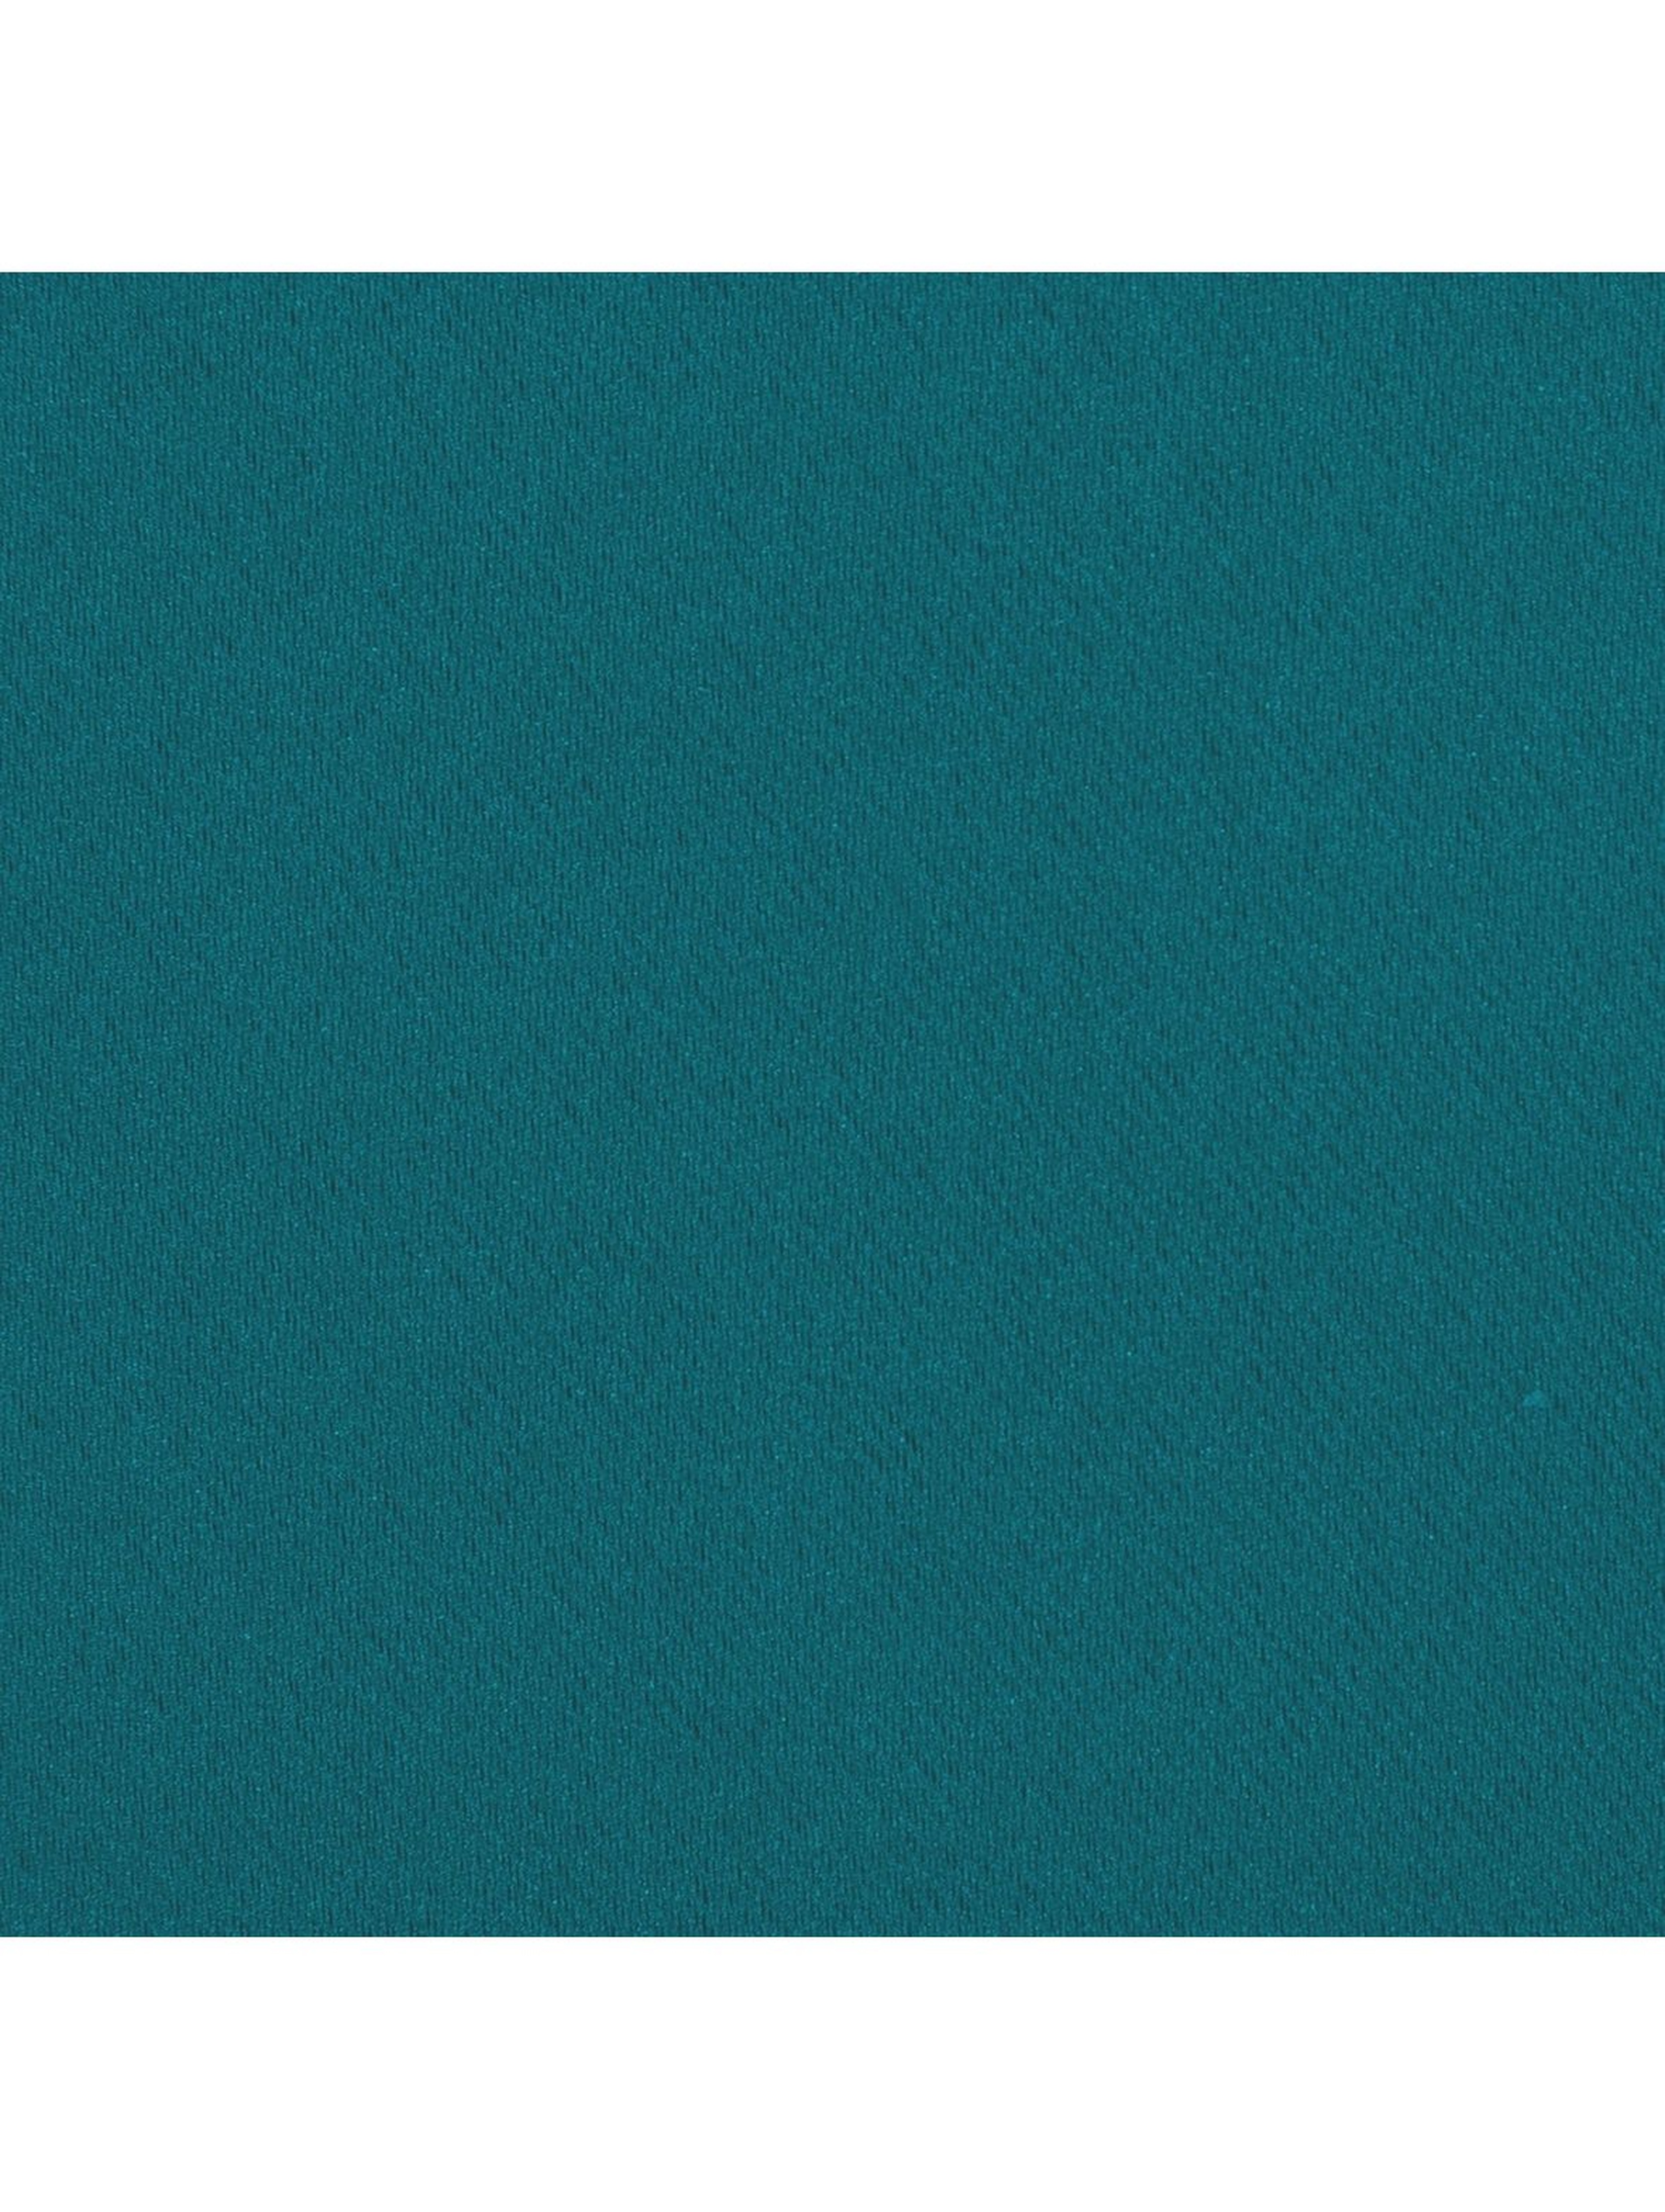 Zasłona jednokolorowa zaciemniająca - turkusowa - 135x270cm